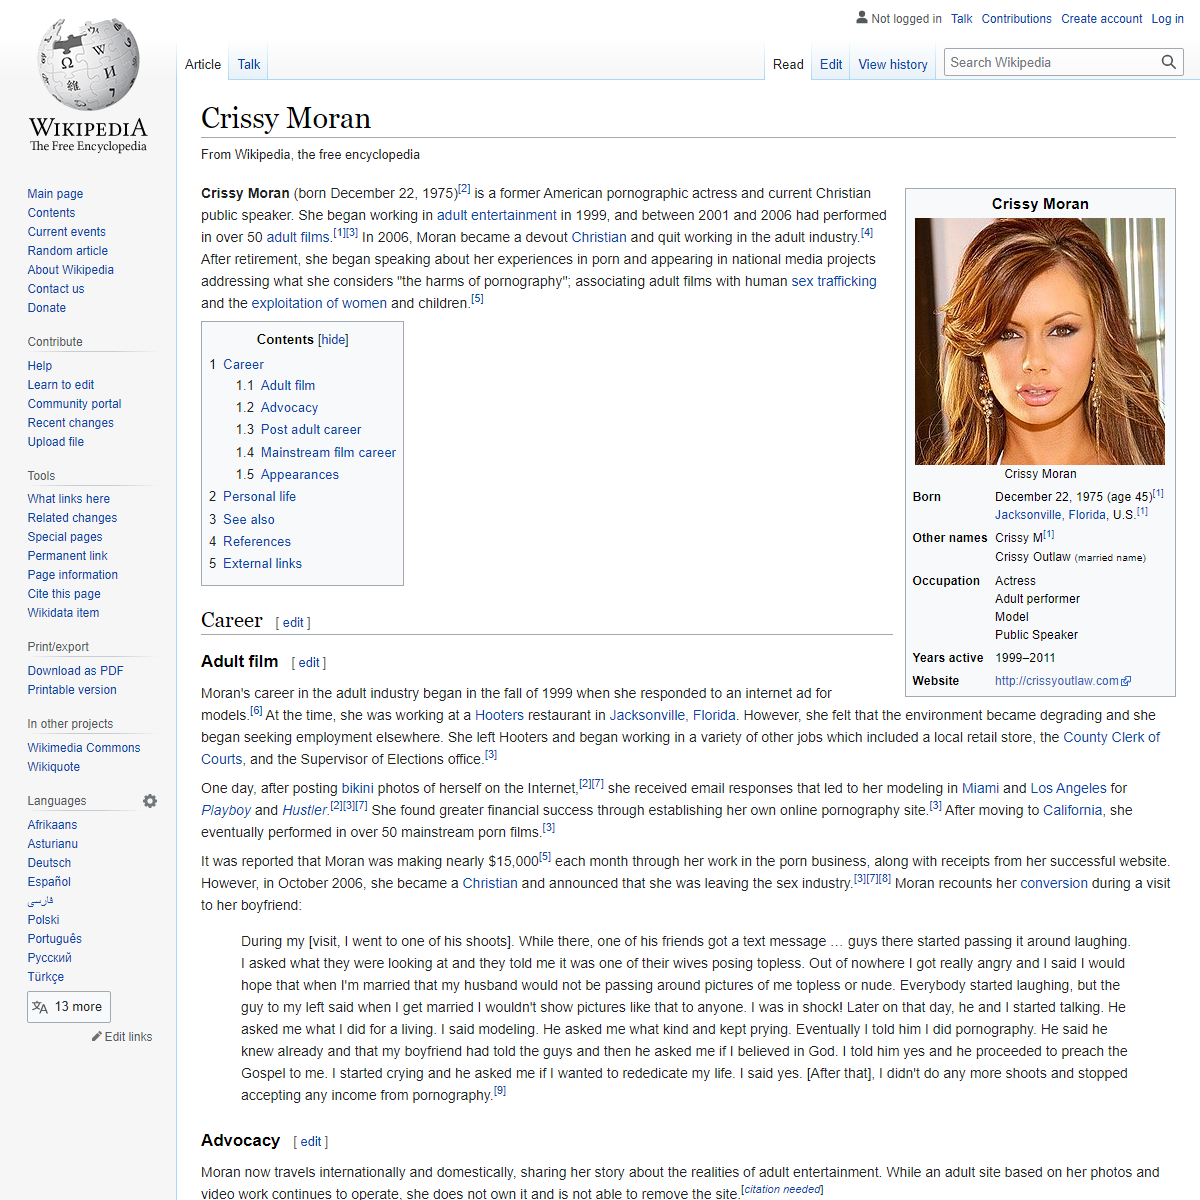 A complete backup of https://en.wikipedia.org/wiki/Crissy_Moran